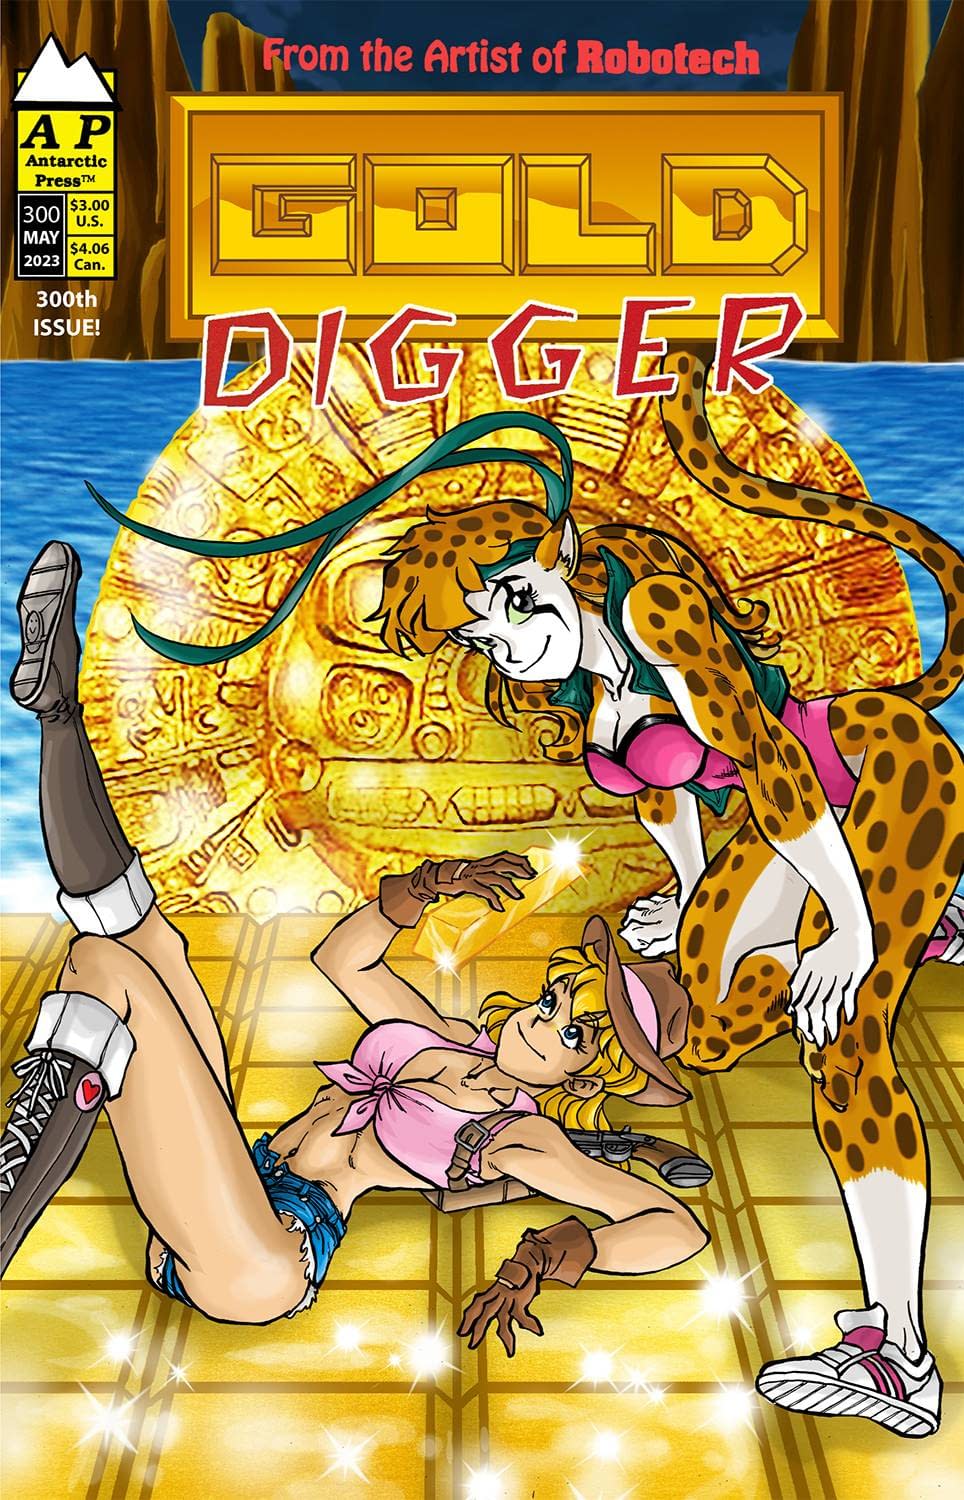 Comic book Gold Digger Vol 2 # 22 Fred Perry May 2001 Antarctic Press 08  box 12927